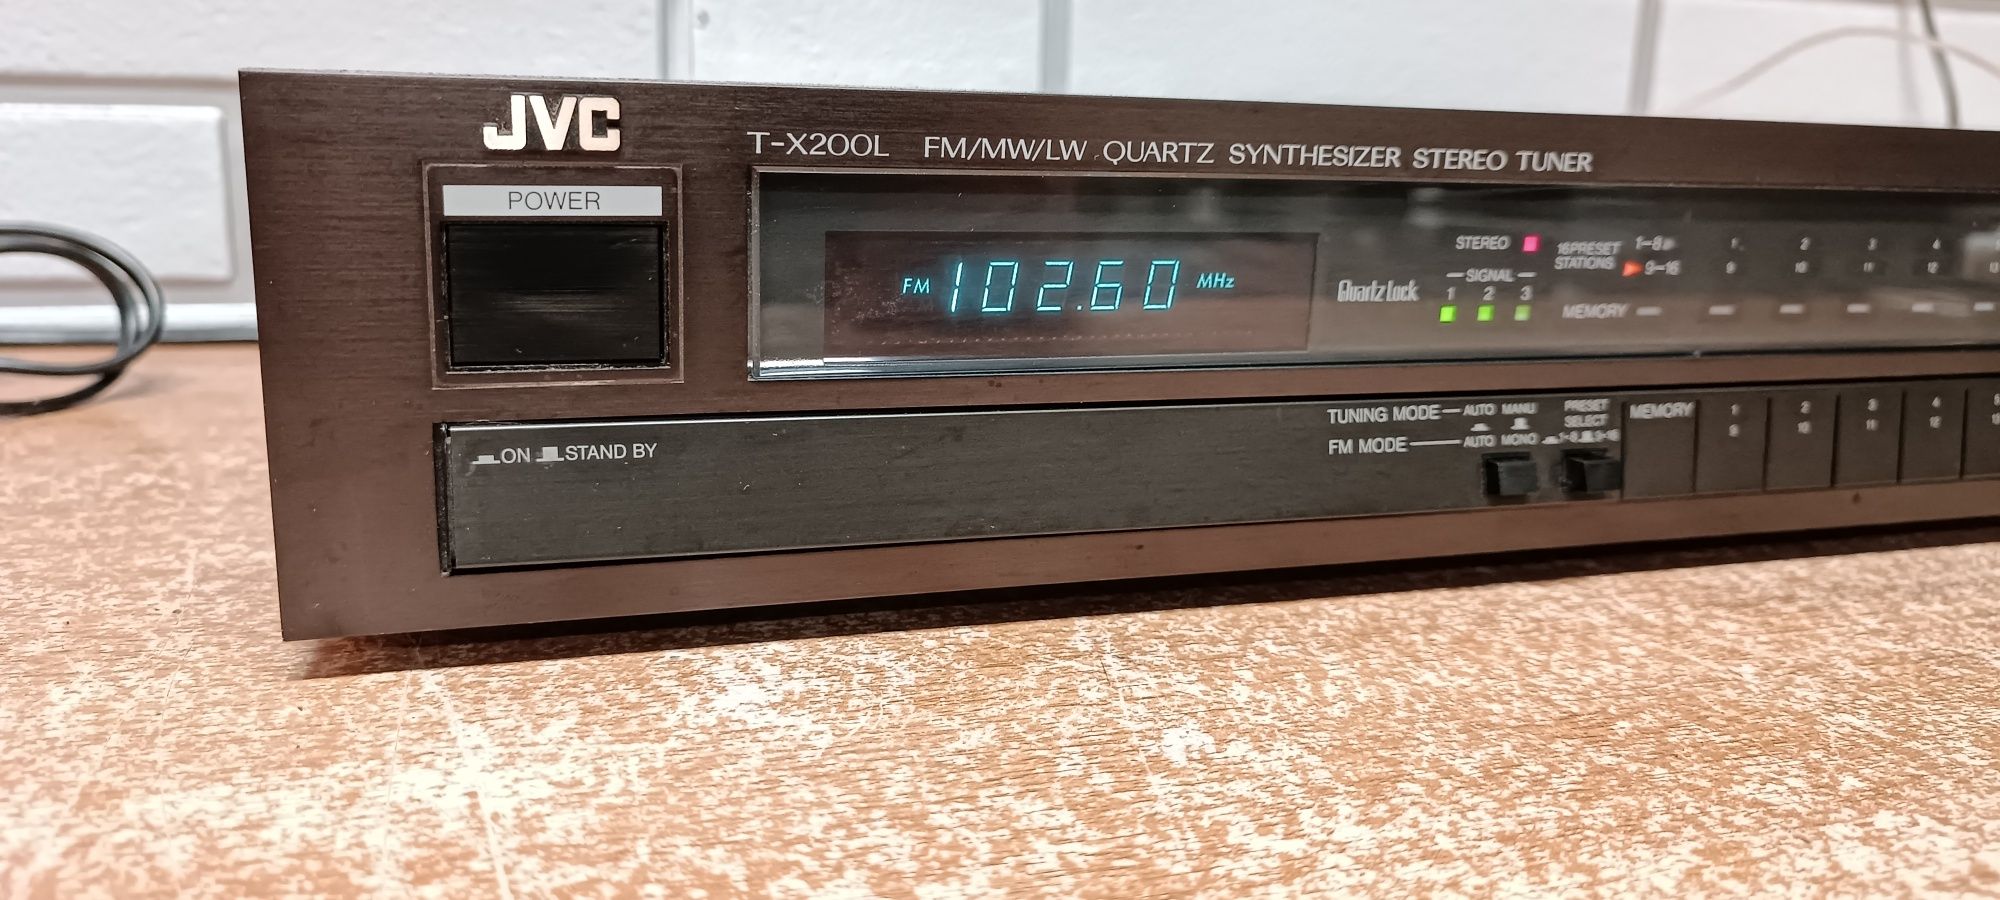 Tuner radiowy JVC T-X200L. hi-fi stereo. Japan